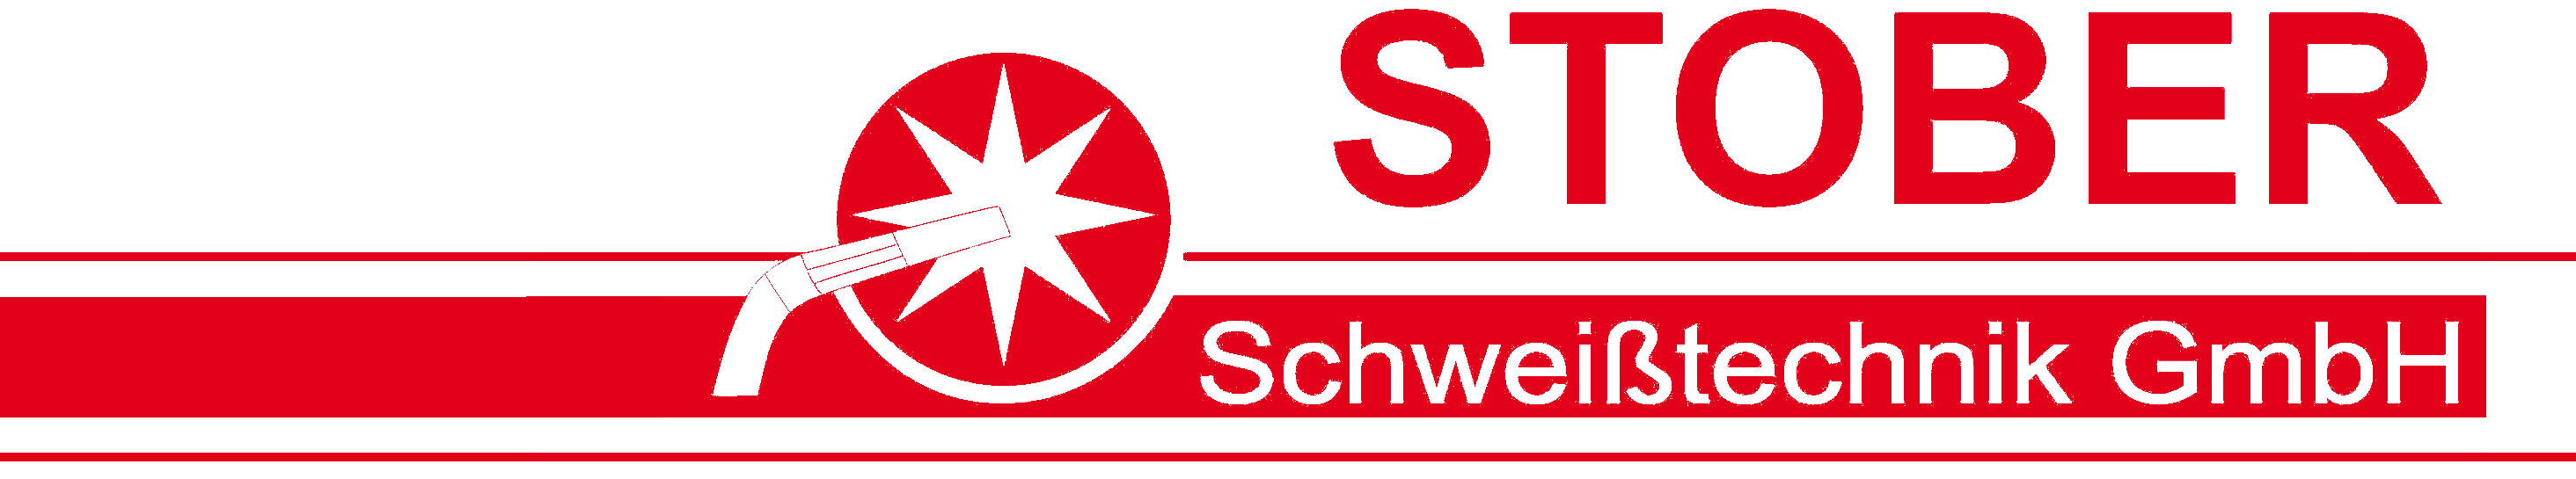 STOBER Schweißtechnik GmbH